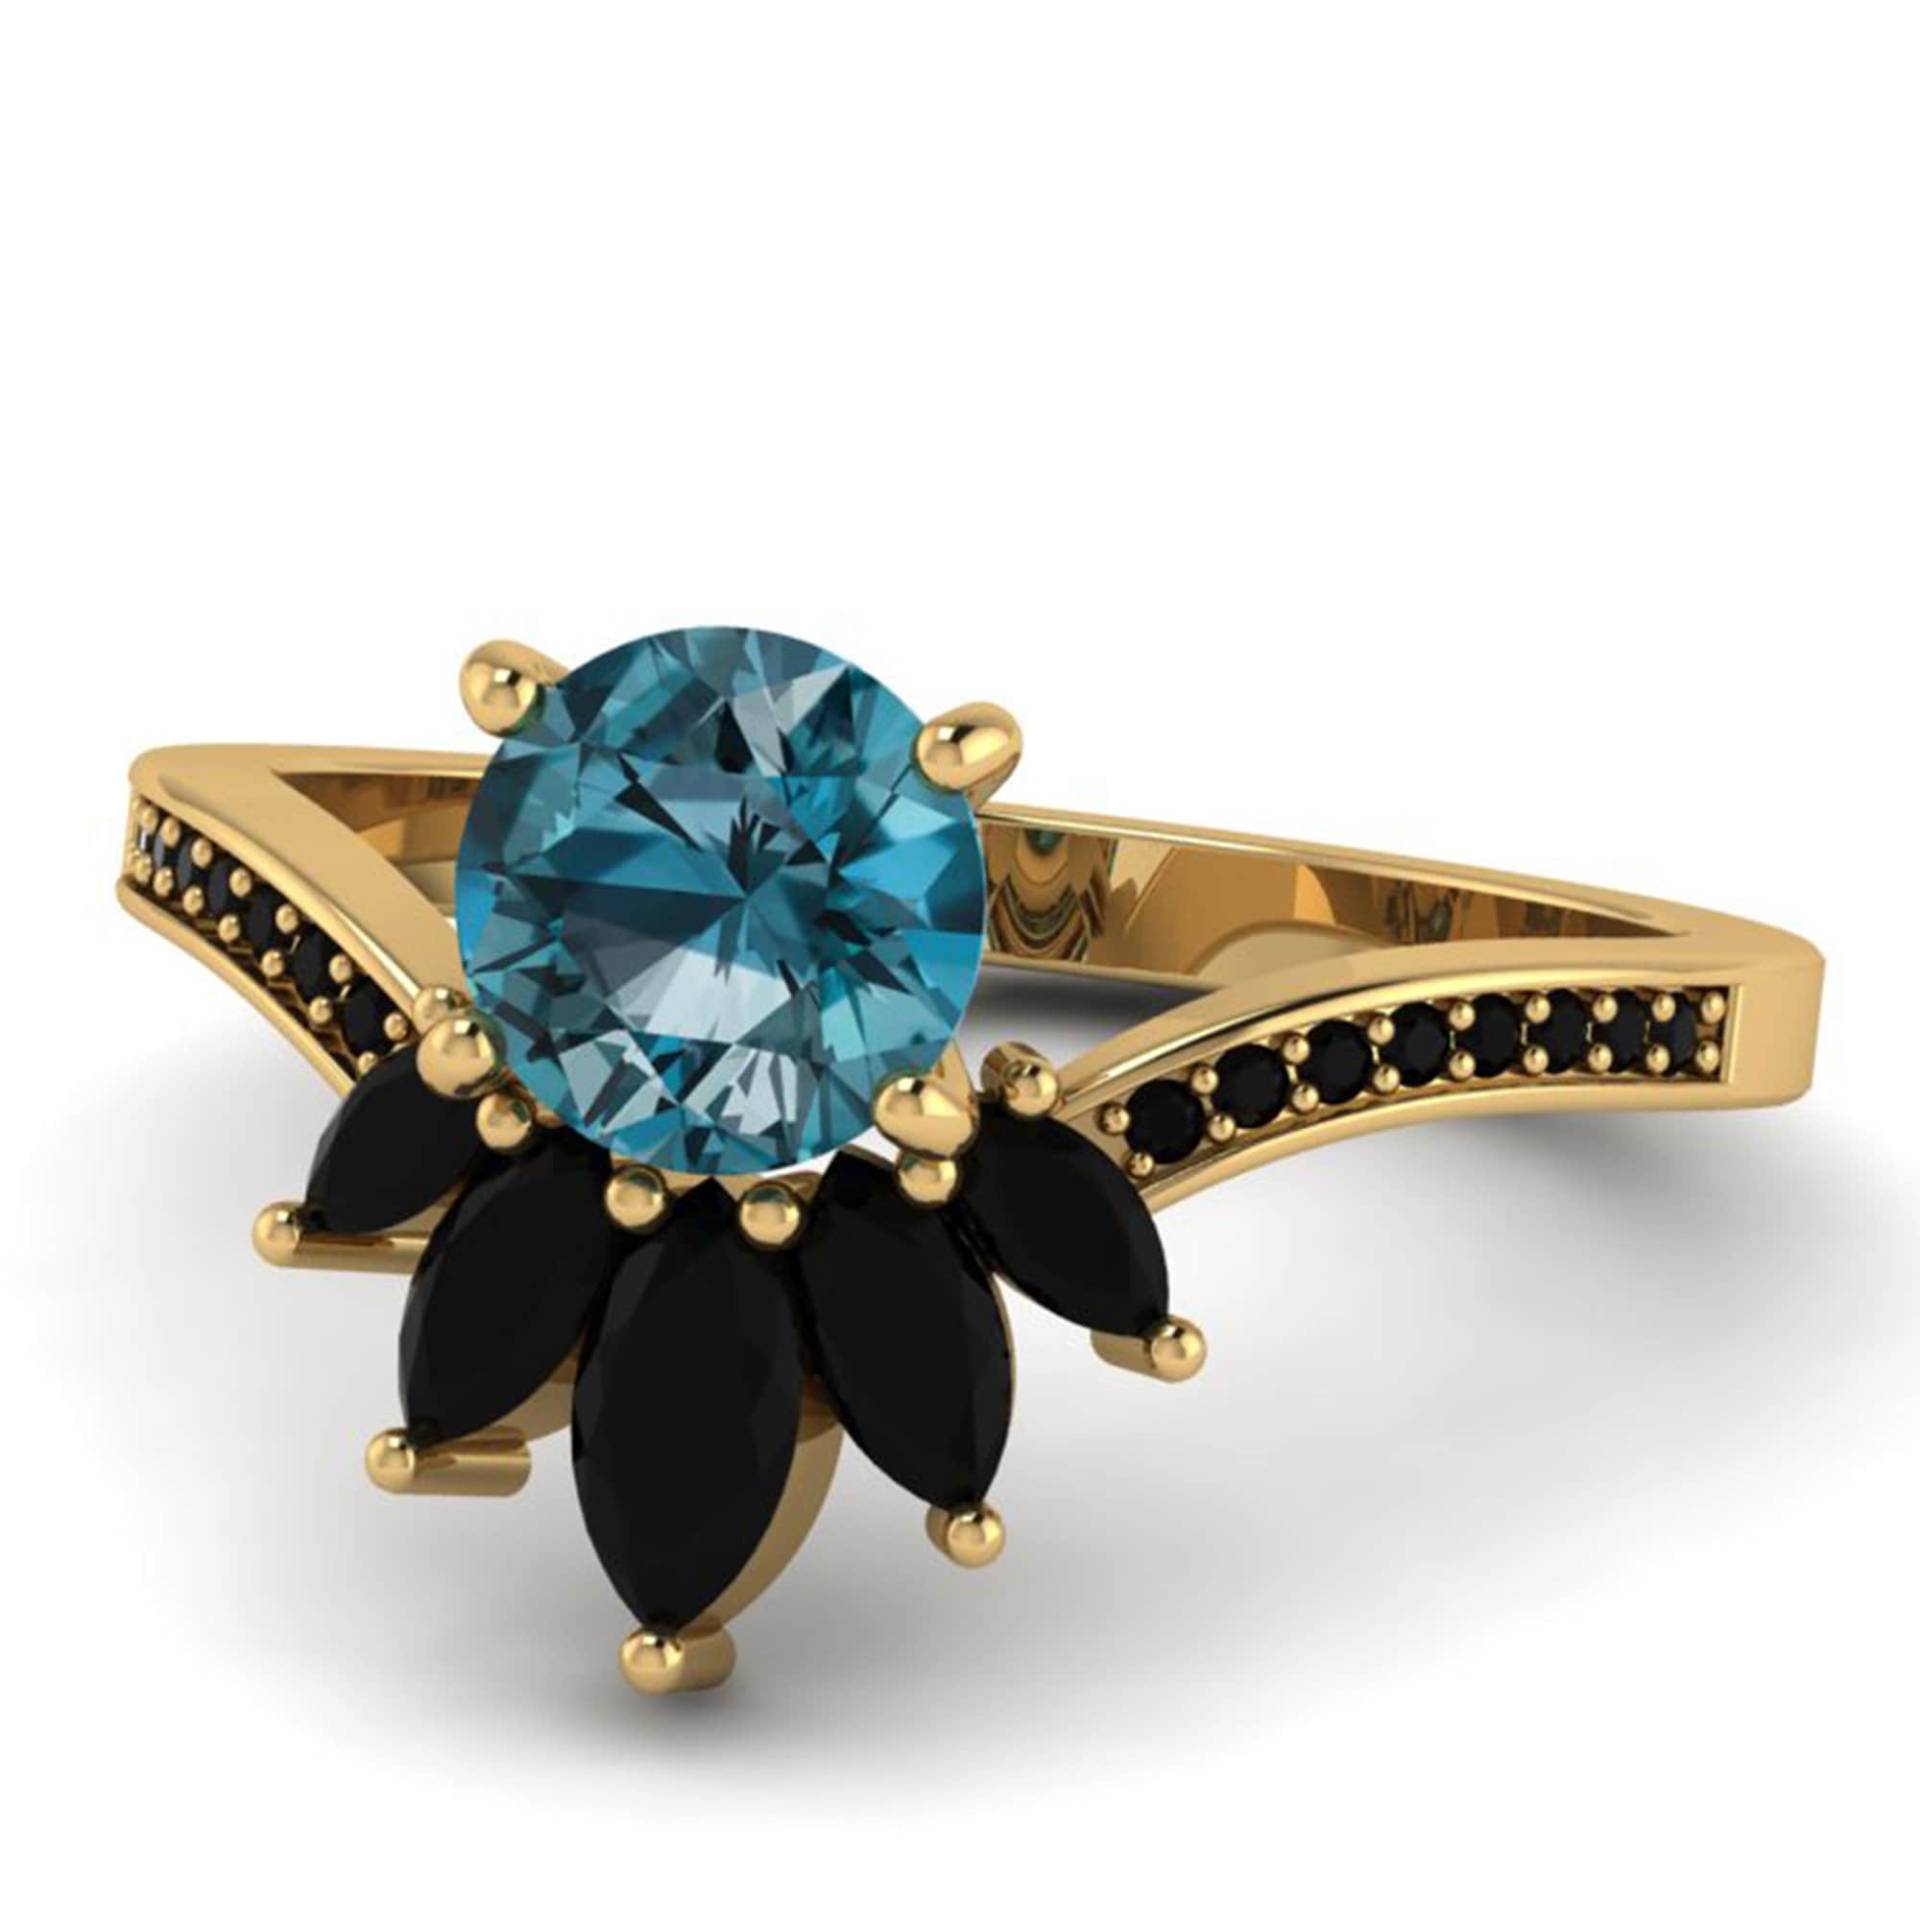 Aaa London Blue Topaz Geburtstagsgeschenk Ring, 14K Gold Blautopas Love Promise Geschenk Für Schwester, Frauen, Onyx Ring von Shannonjewelsin